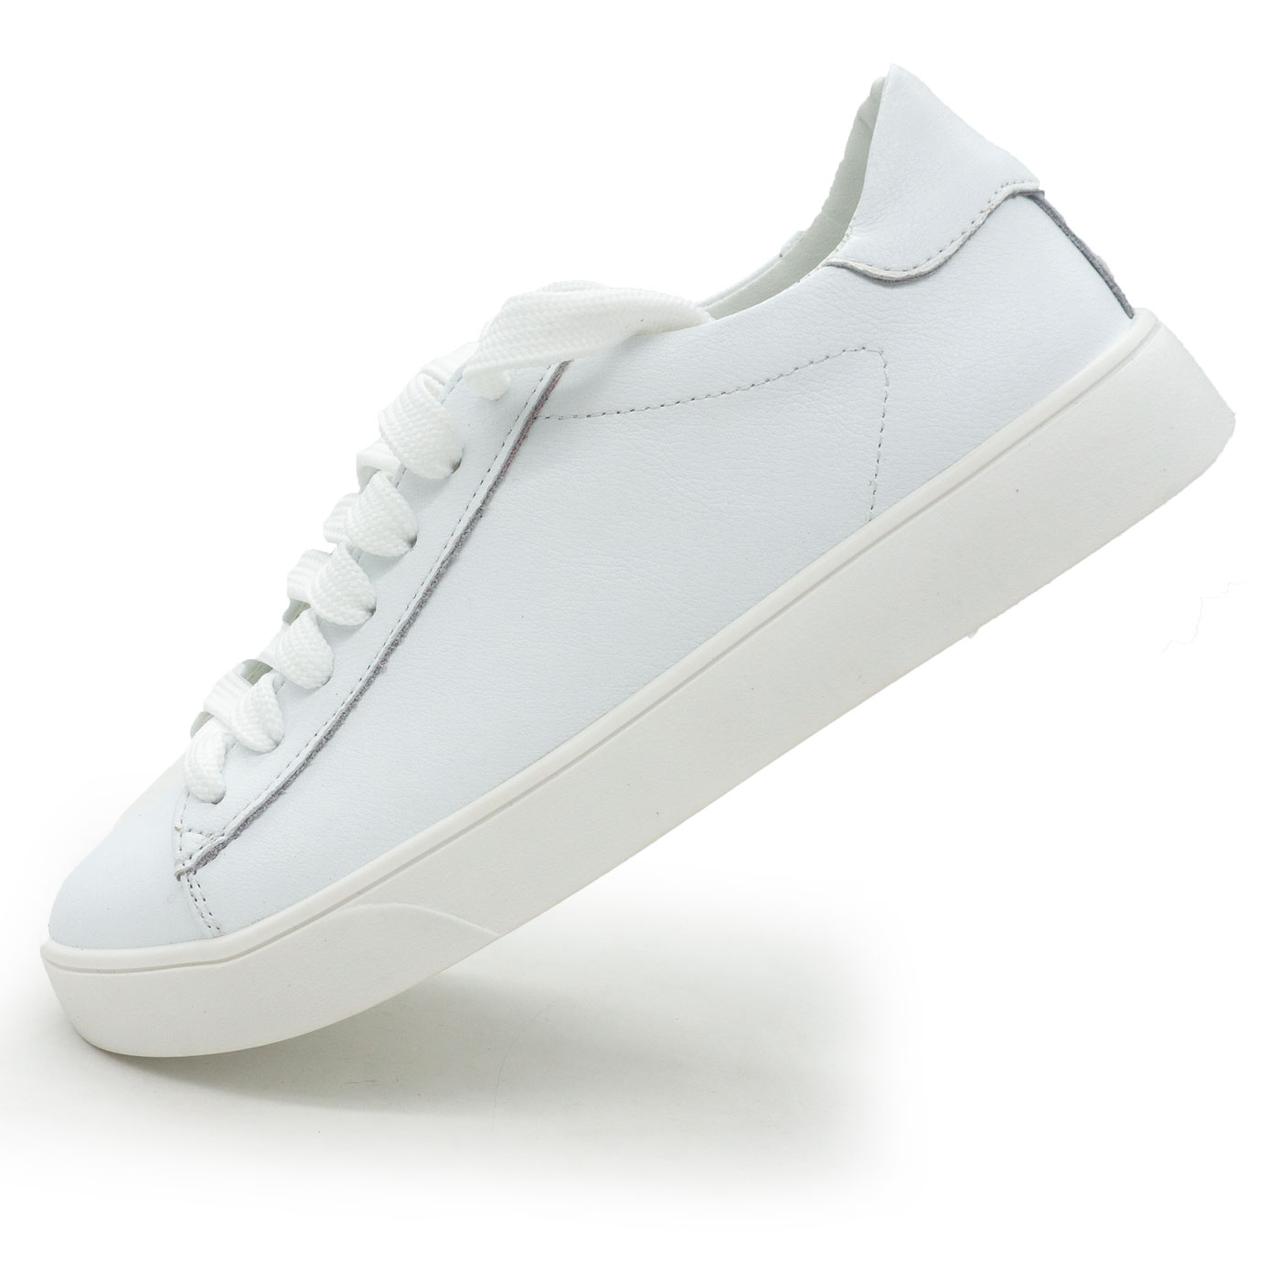 Жіночі білі шкіряні кросівки Kelly Corso 35. Розміри в наявності: 35, 36, 37, 38, 39, 40, 41, 42.